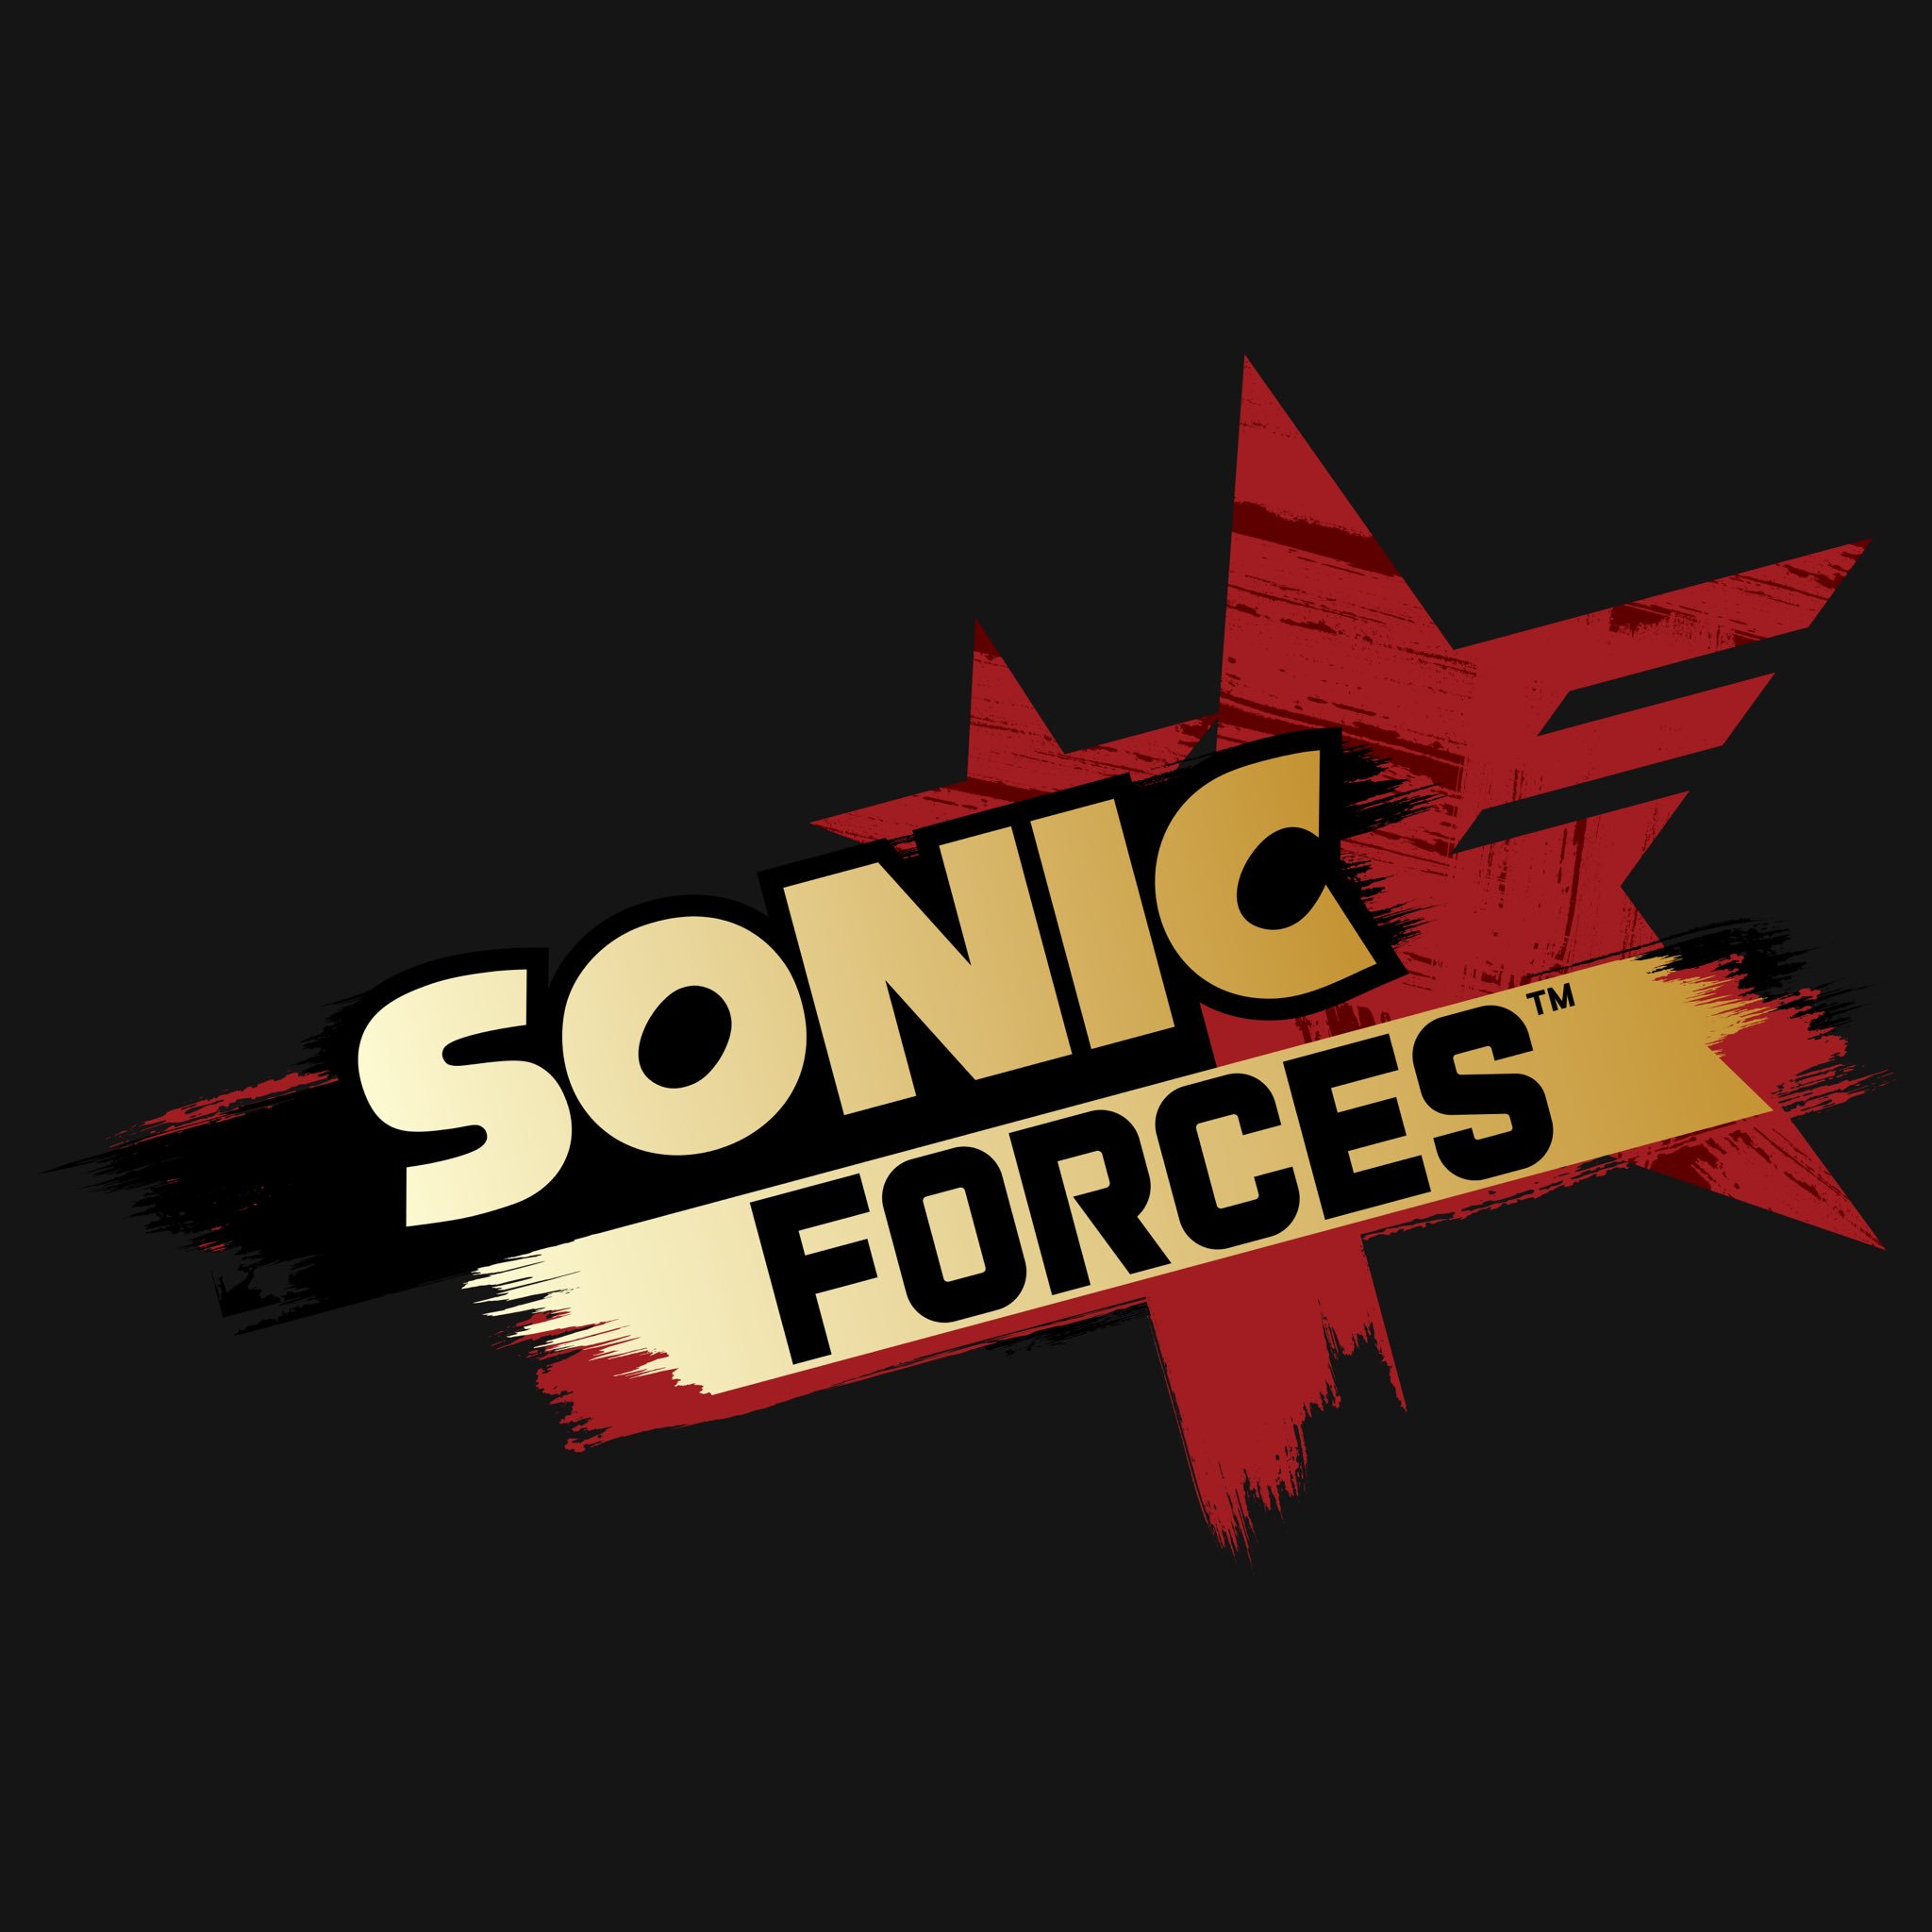 Sonic-Forces-Twitter-Logo.jpg